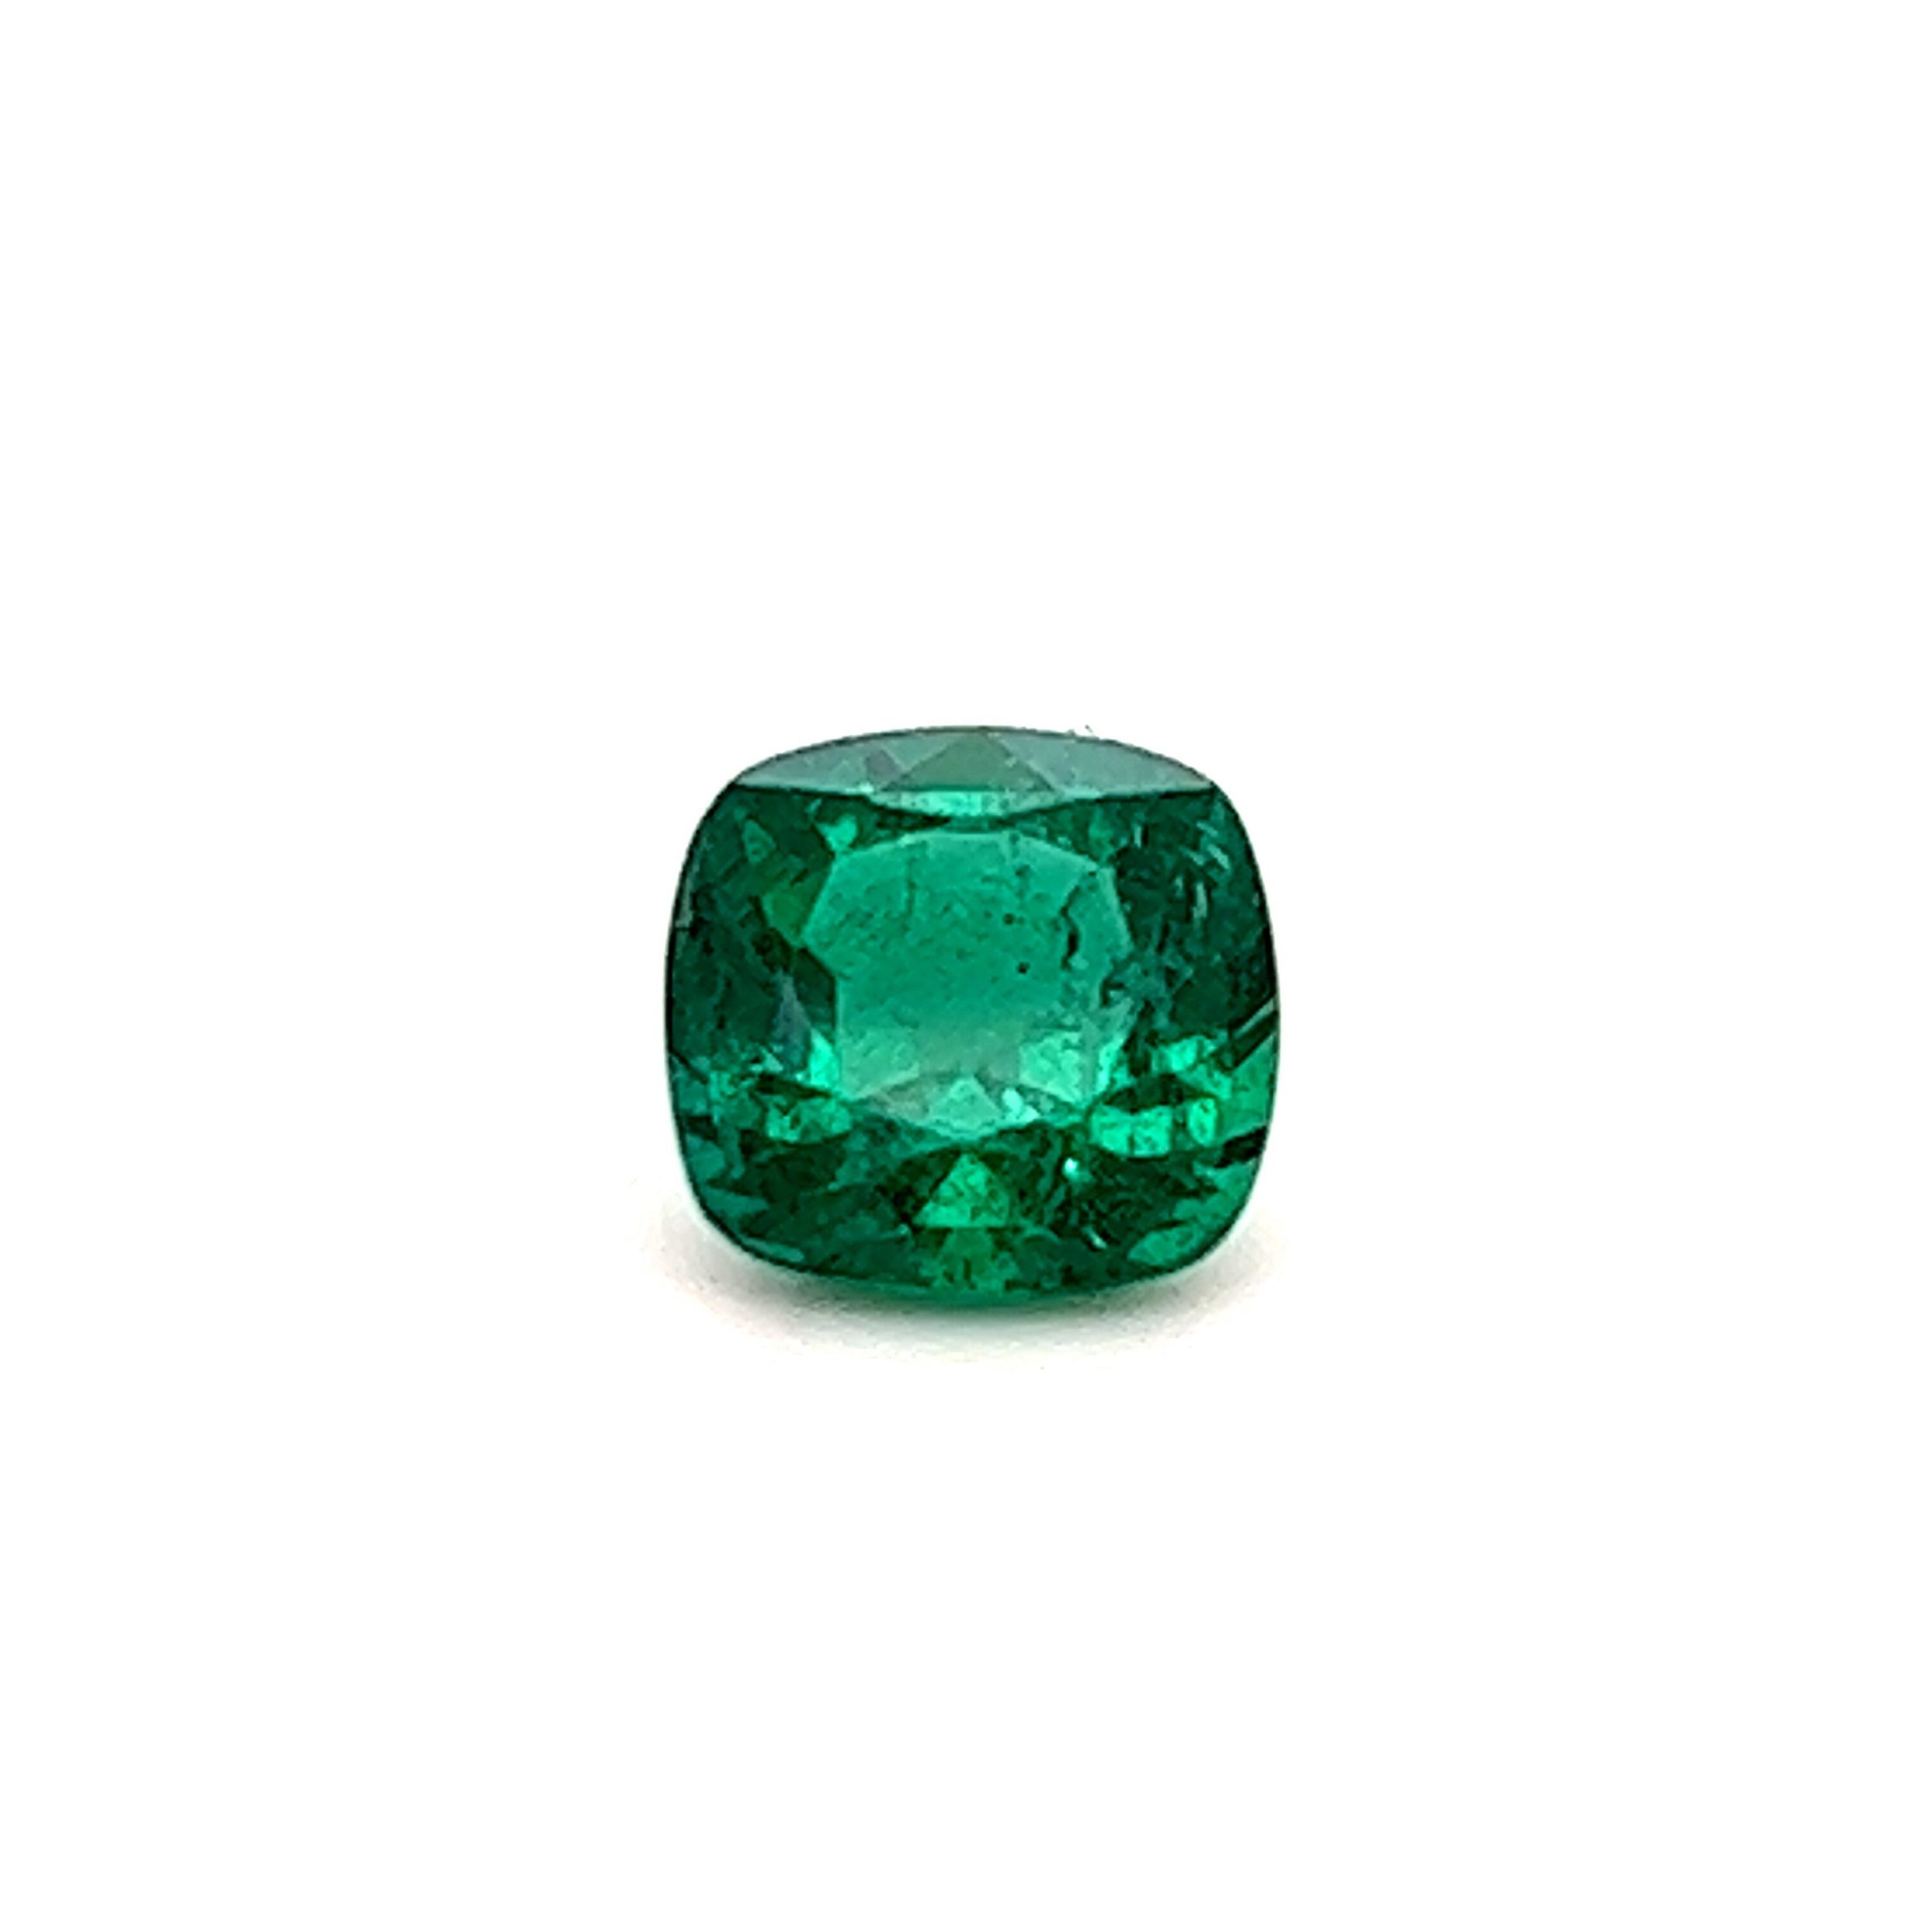 2.05ct Zambian Cushion Cut Emerald